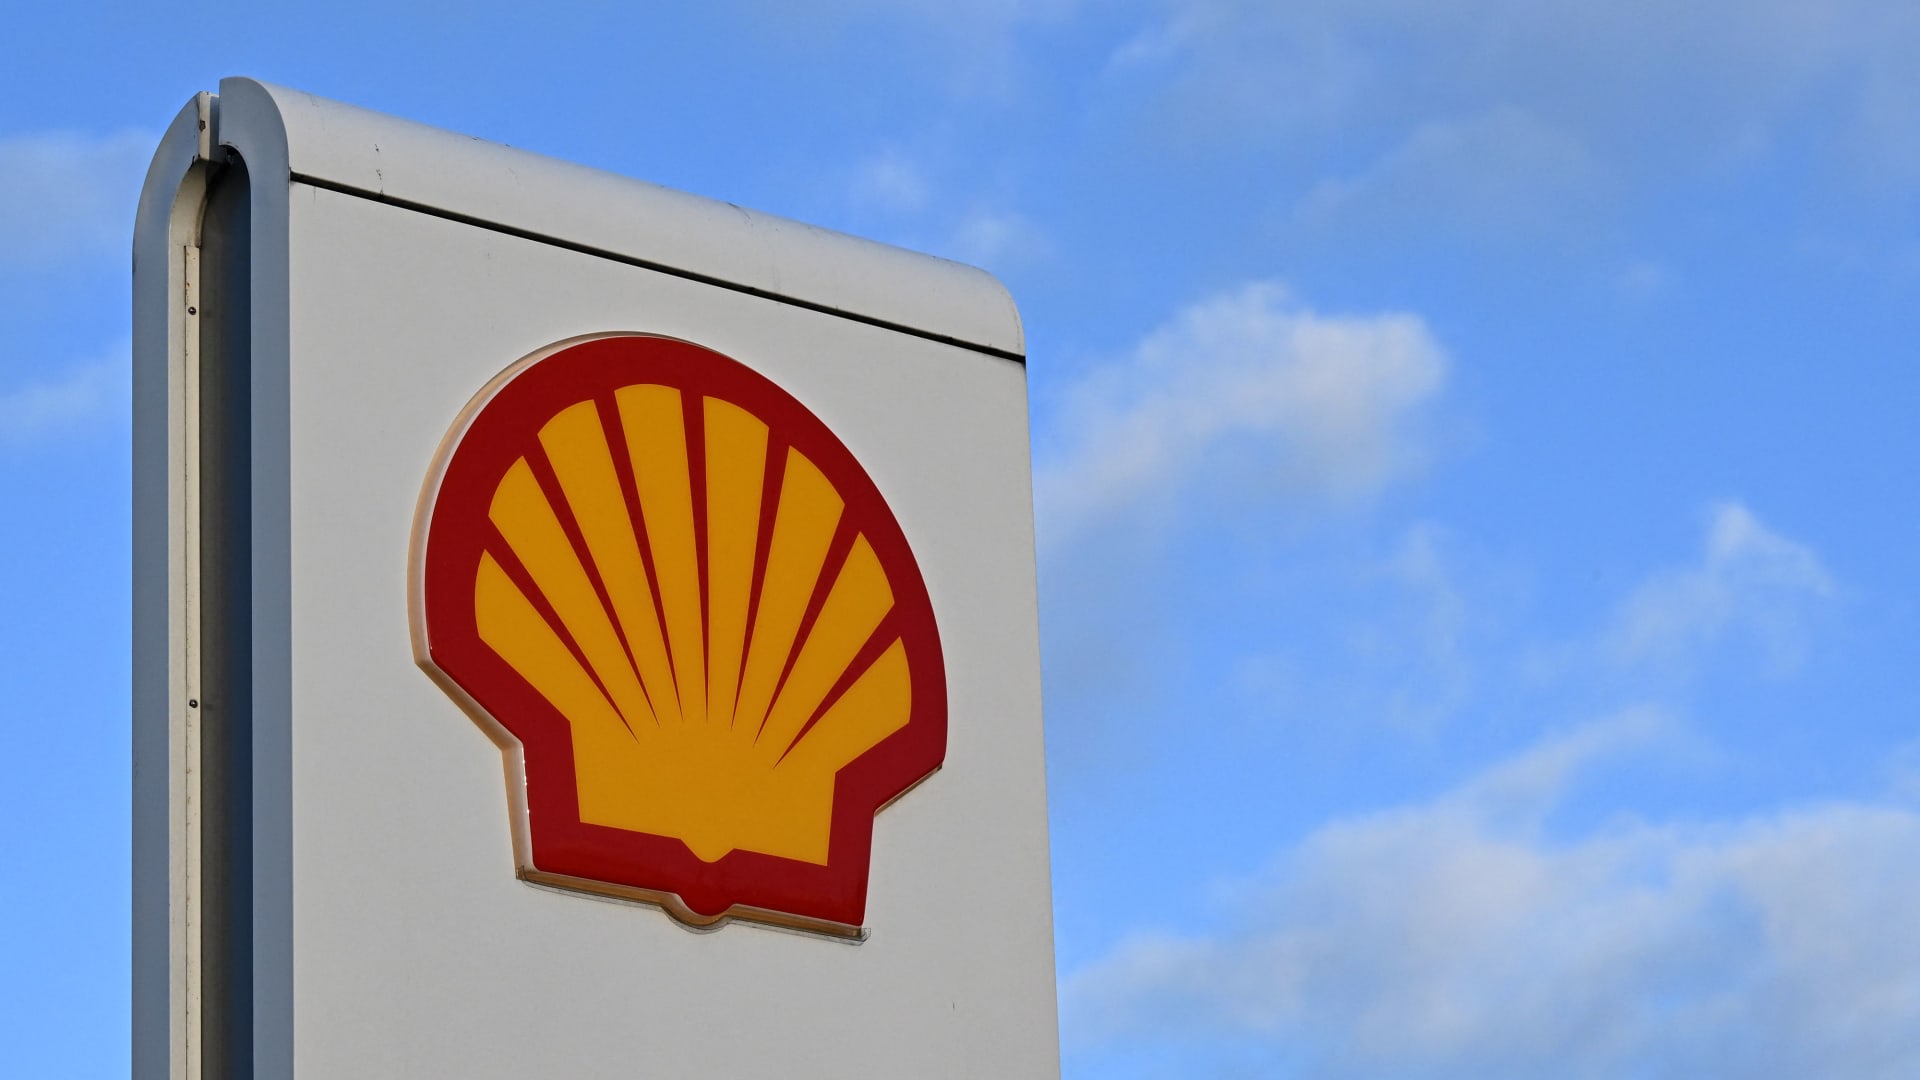 Rritja e fitimeve të Shell: 6.2 miliardë dollarë fitime mes luhatjeve të çmimit të naftës